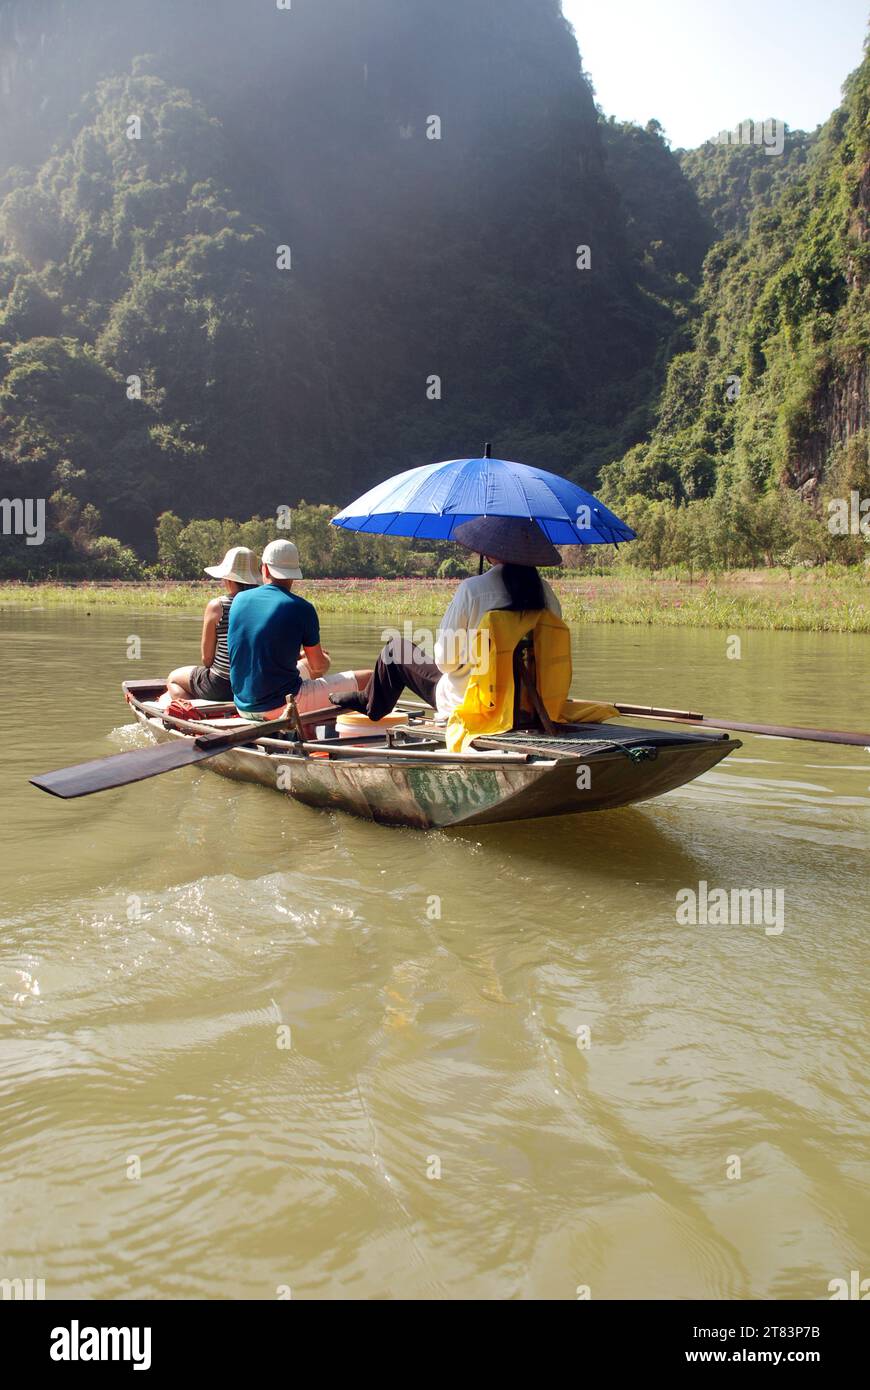 Les touristes montent dans des bateaux à rames vietnamiens traditionnels parmi les falaises de calcaire et les grottes de Tam COC Banque D'Images